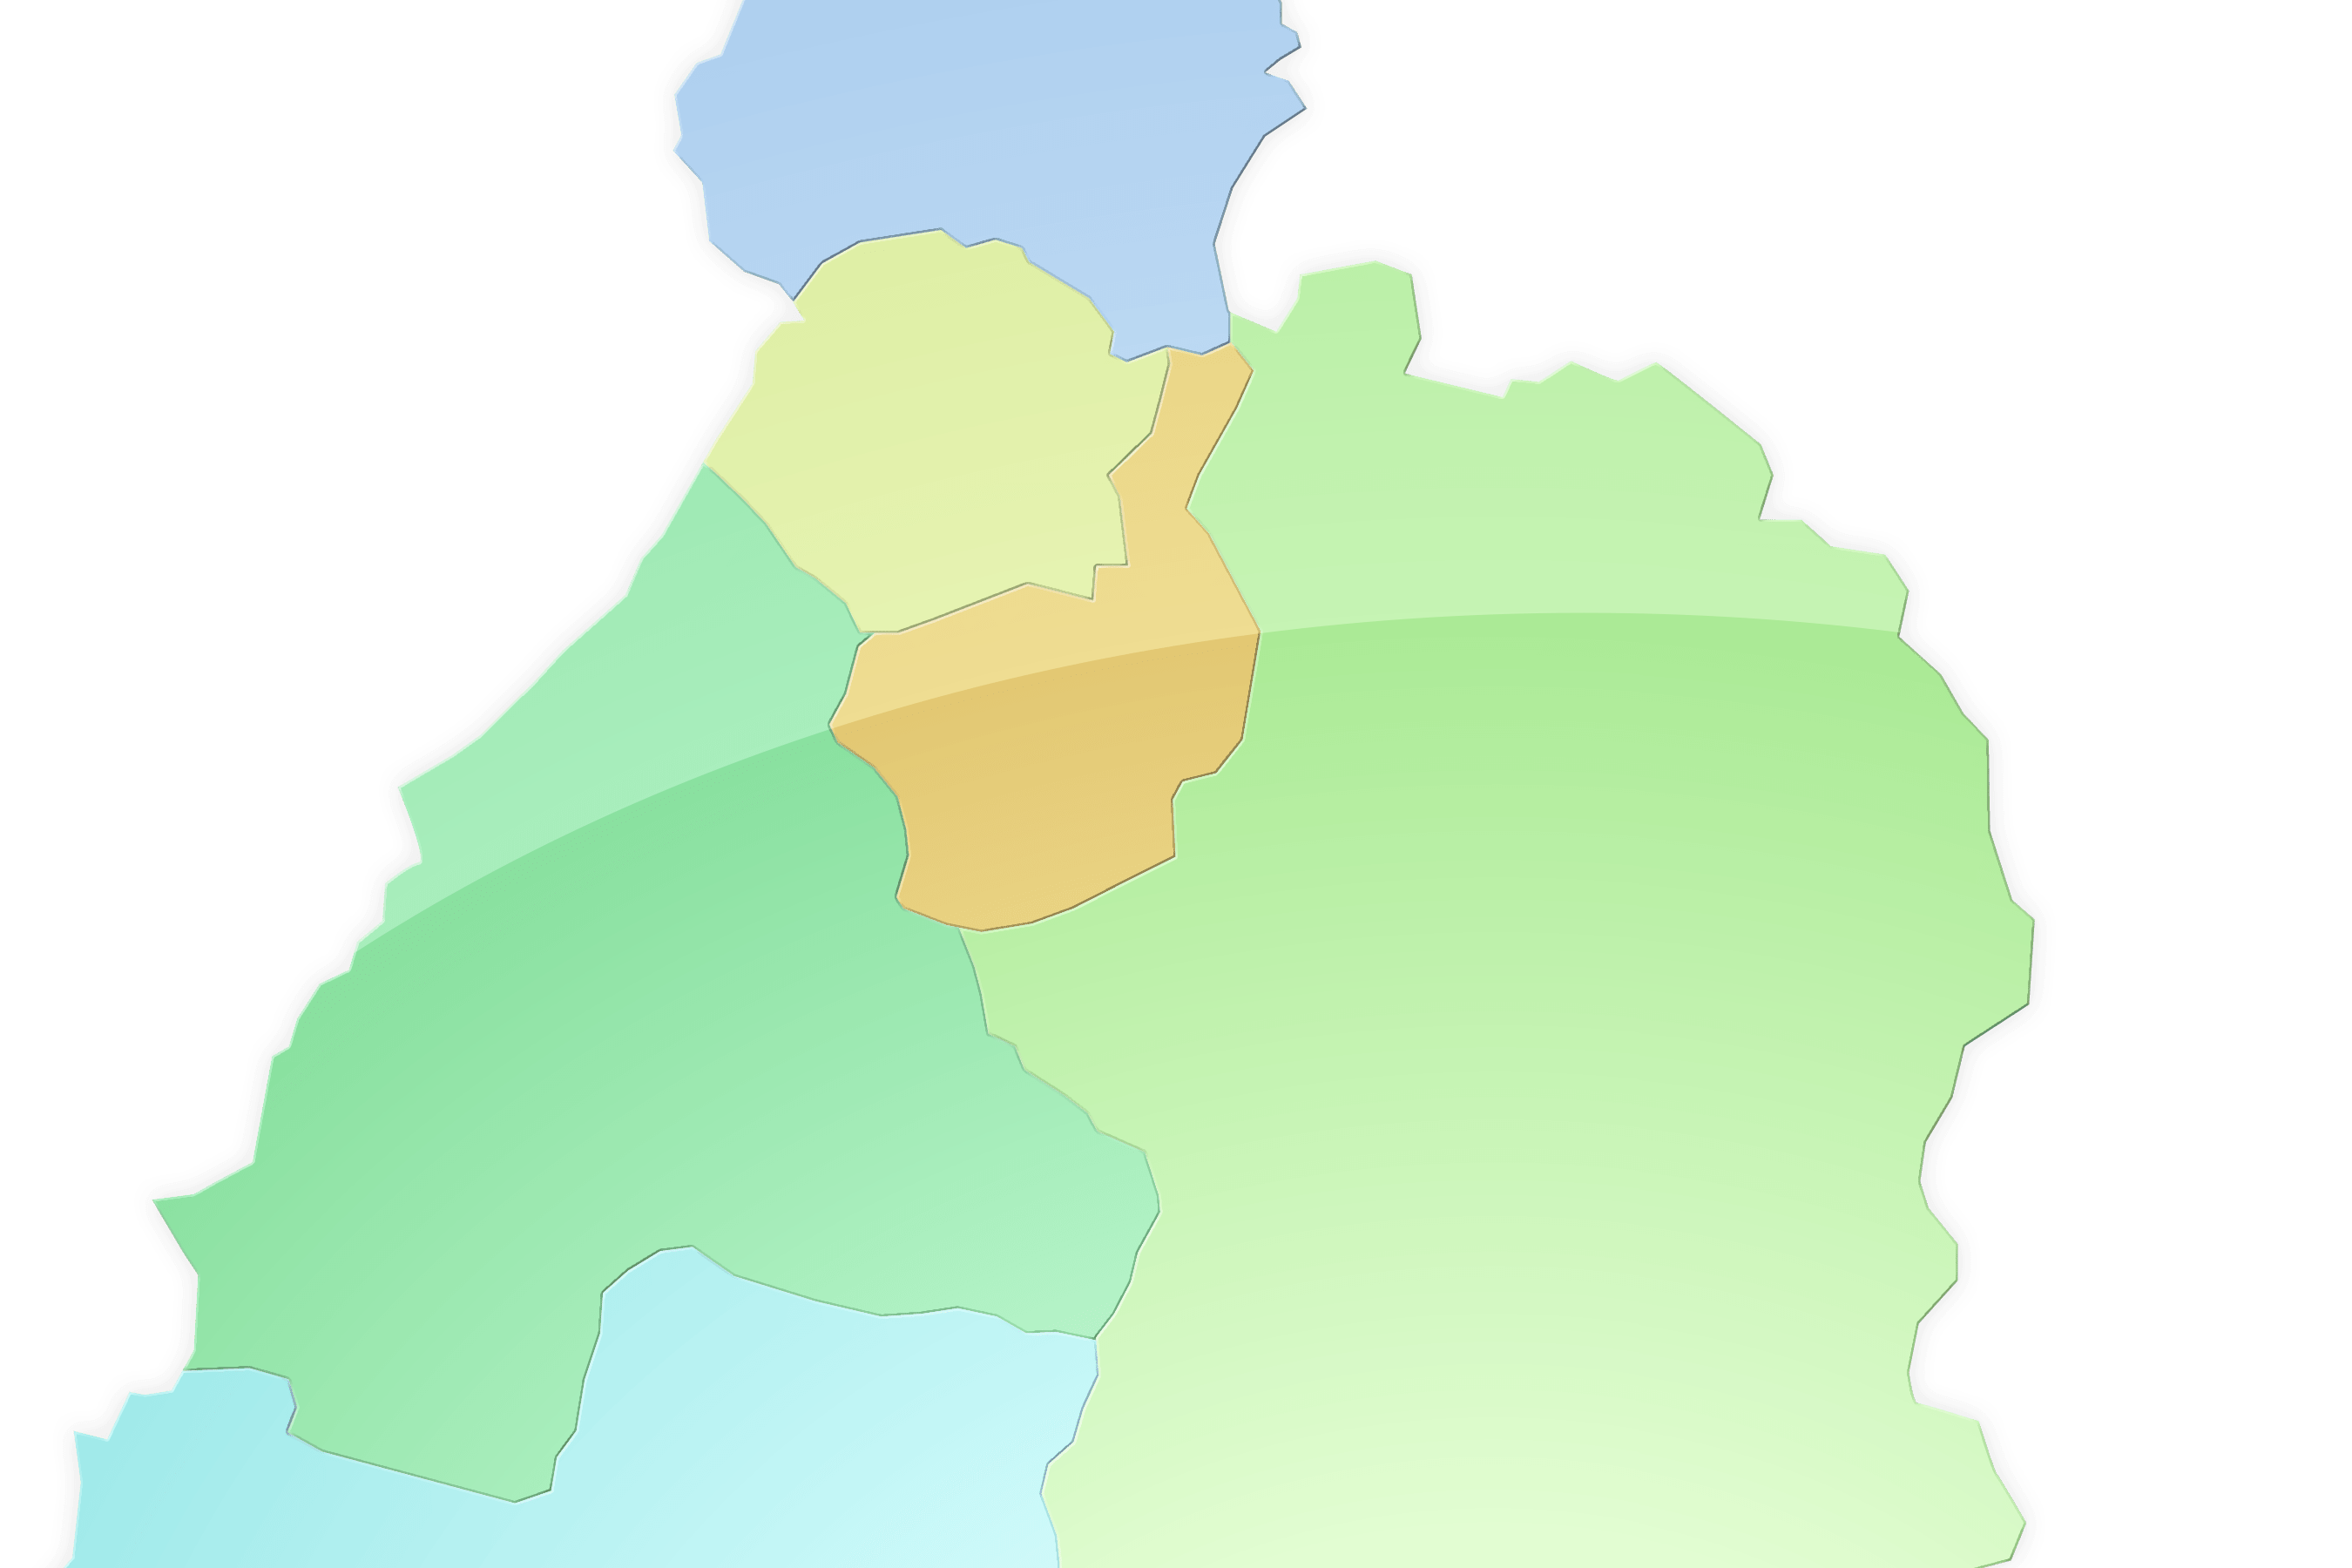 湯沢周辺の地域を色分けした地図イメージ